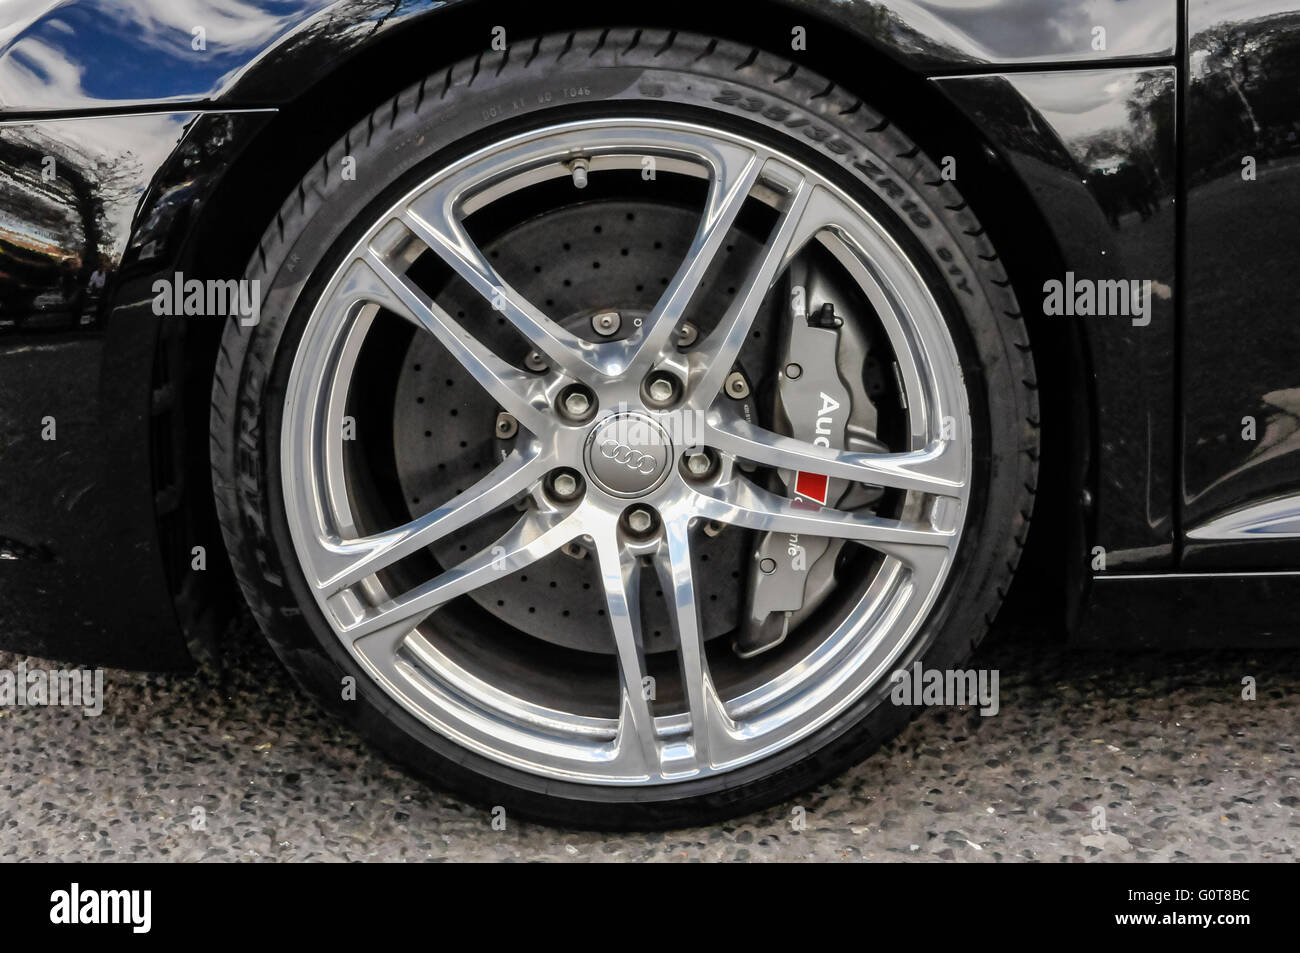 La pinza freno a disco sulla ruota anteriore di un Audi R8 Quattro Foto Stock